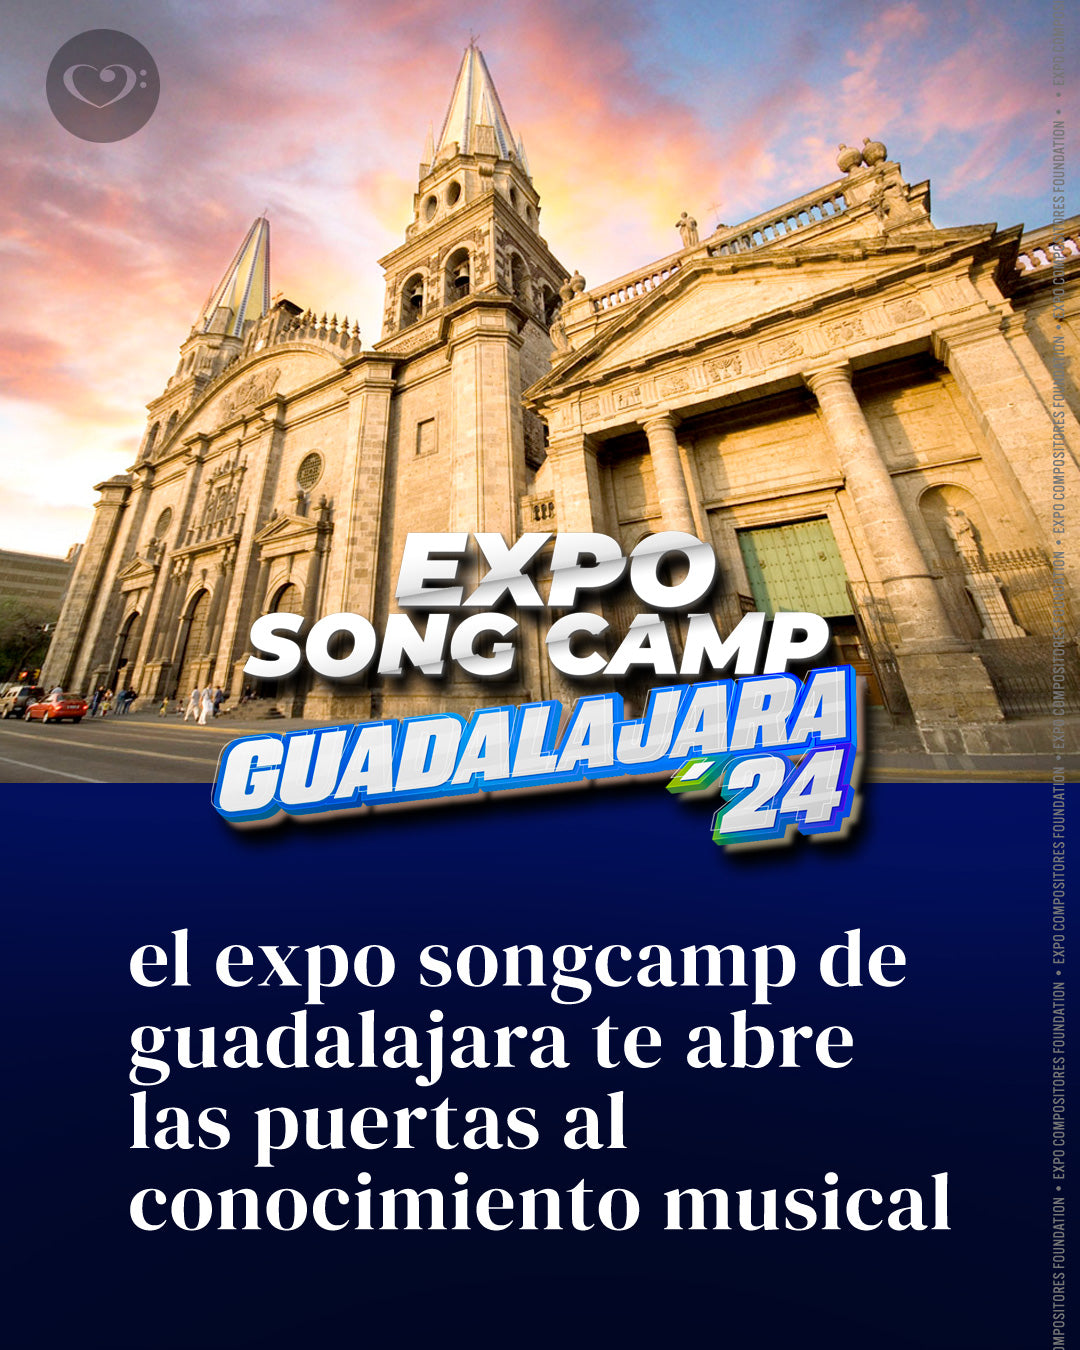 Song Camp Guadalajara